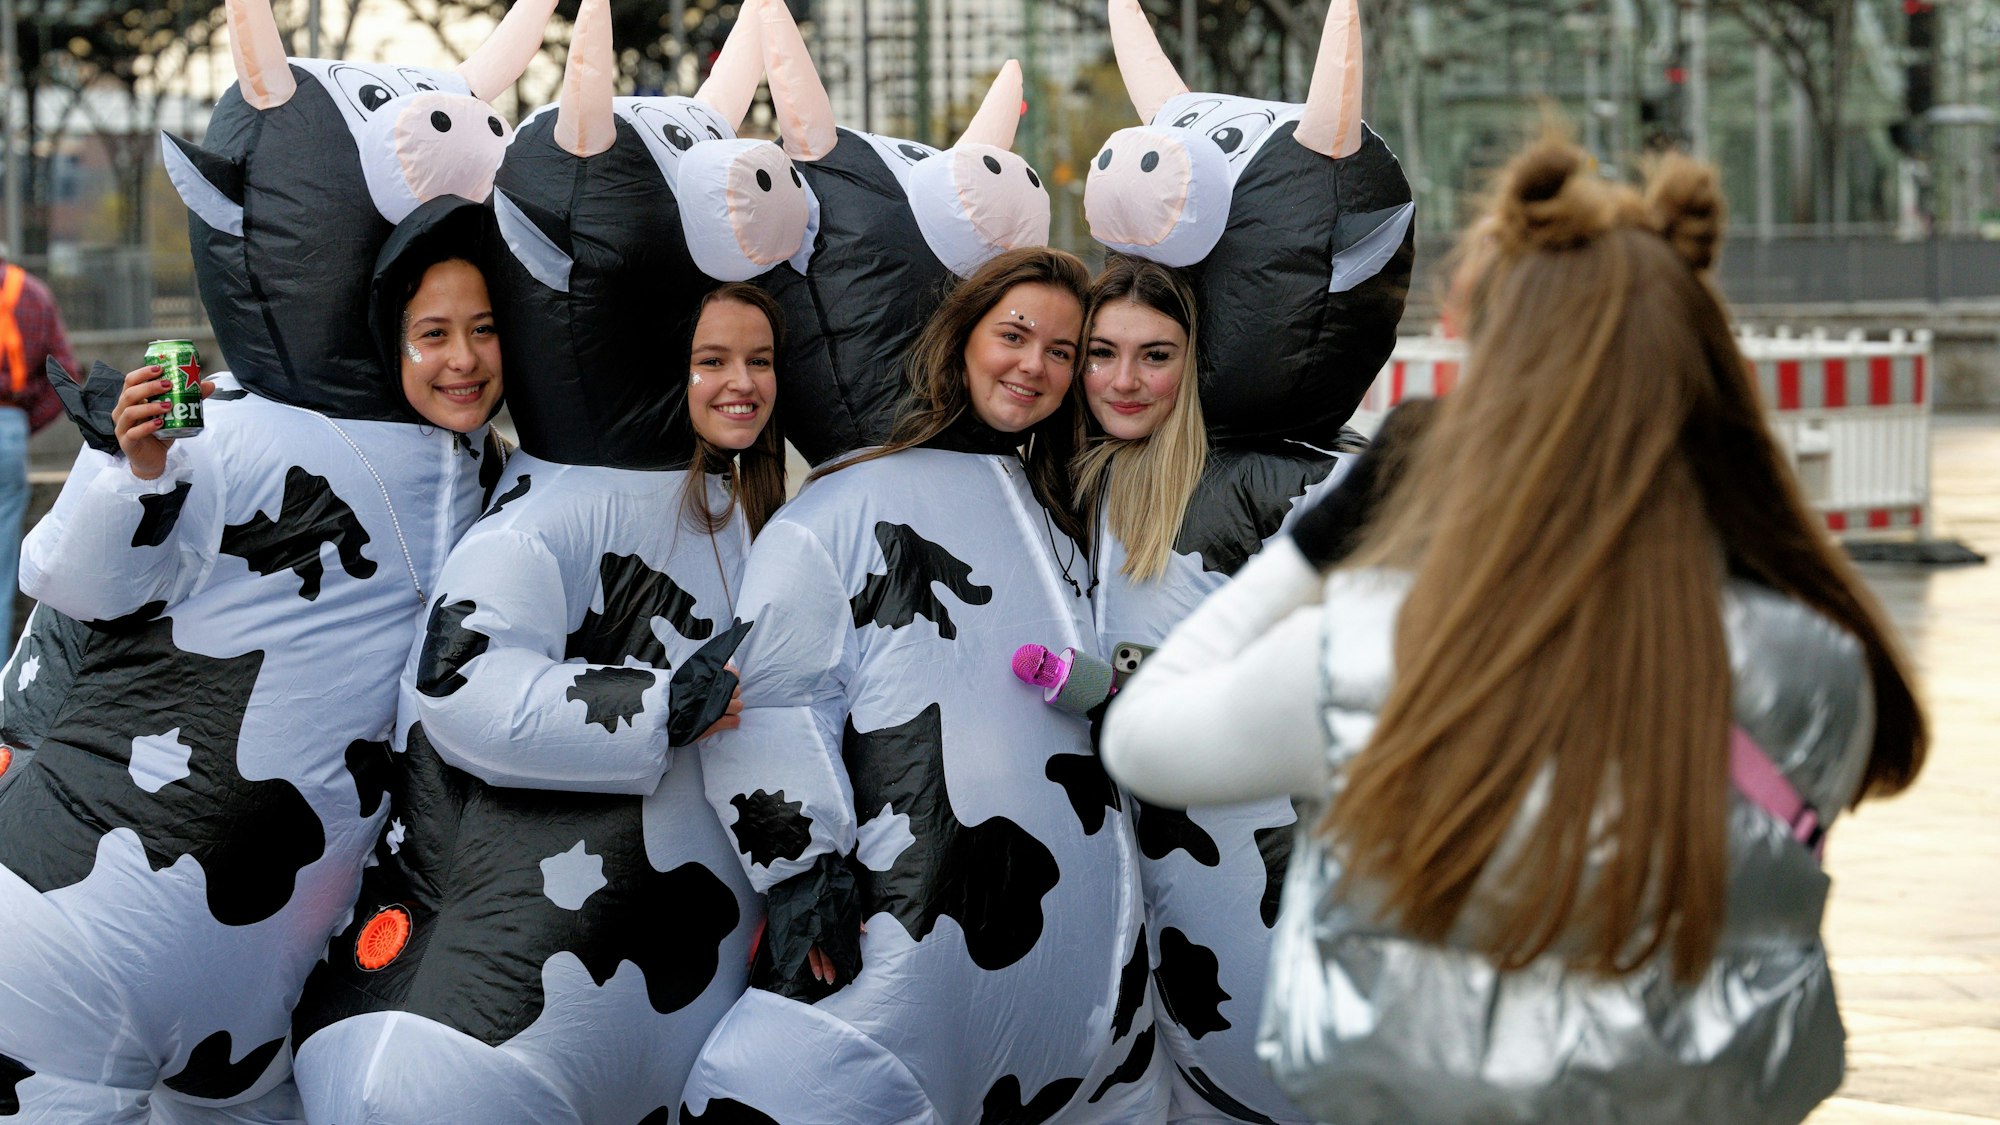 Kühe sind ganz offensichtlich ein sehr, sehr beliebtes Kostüm unter Kölner Jecken.